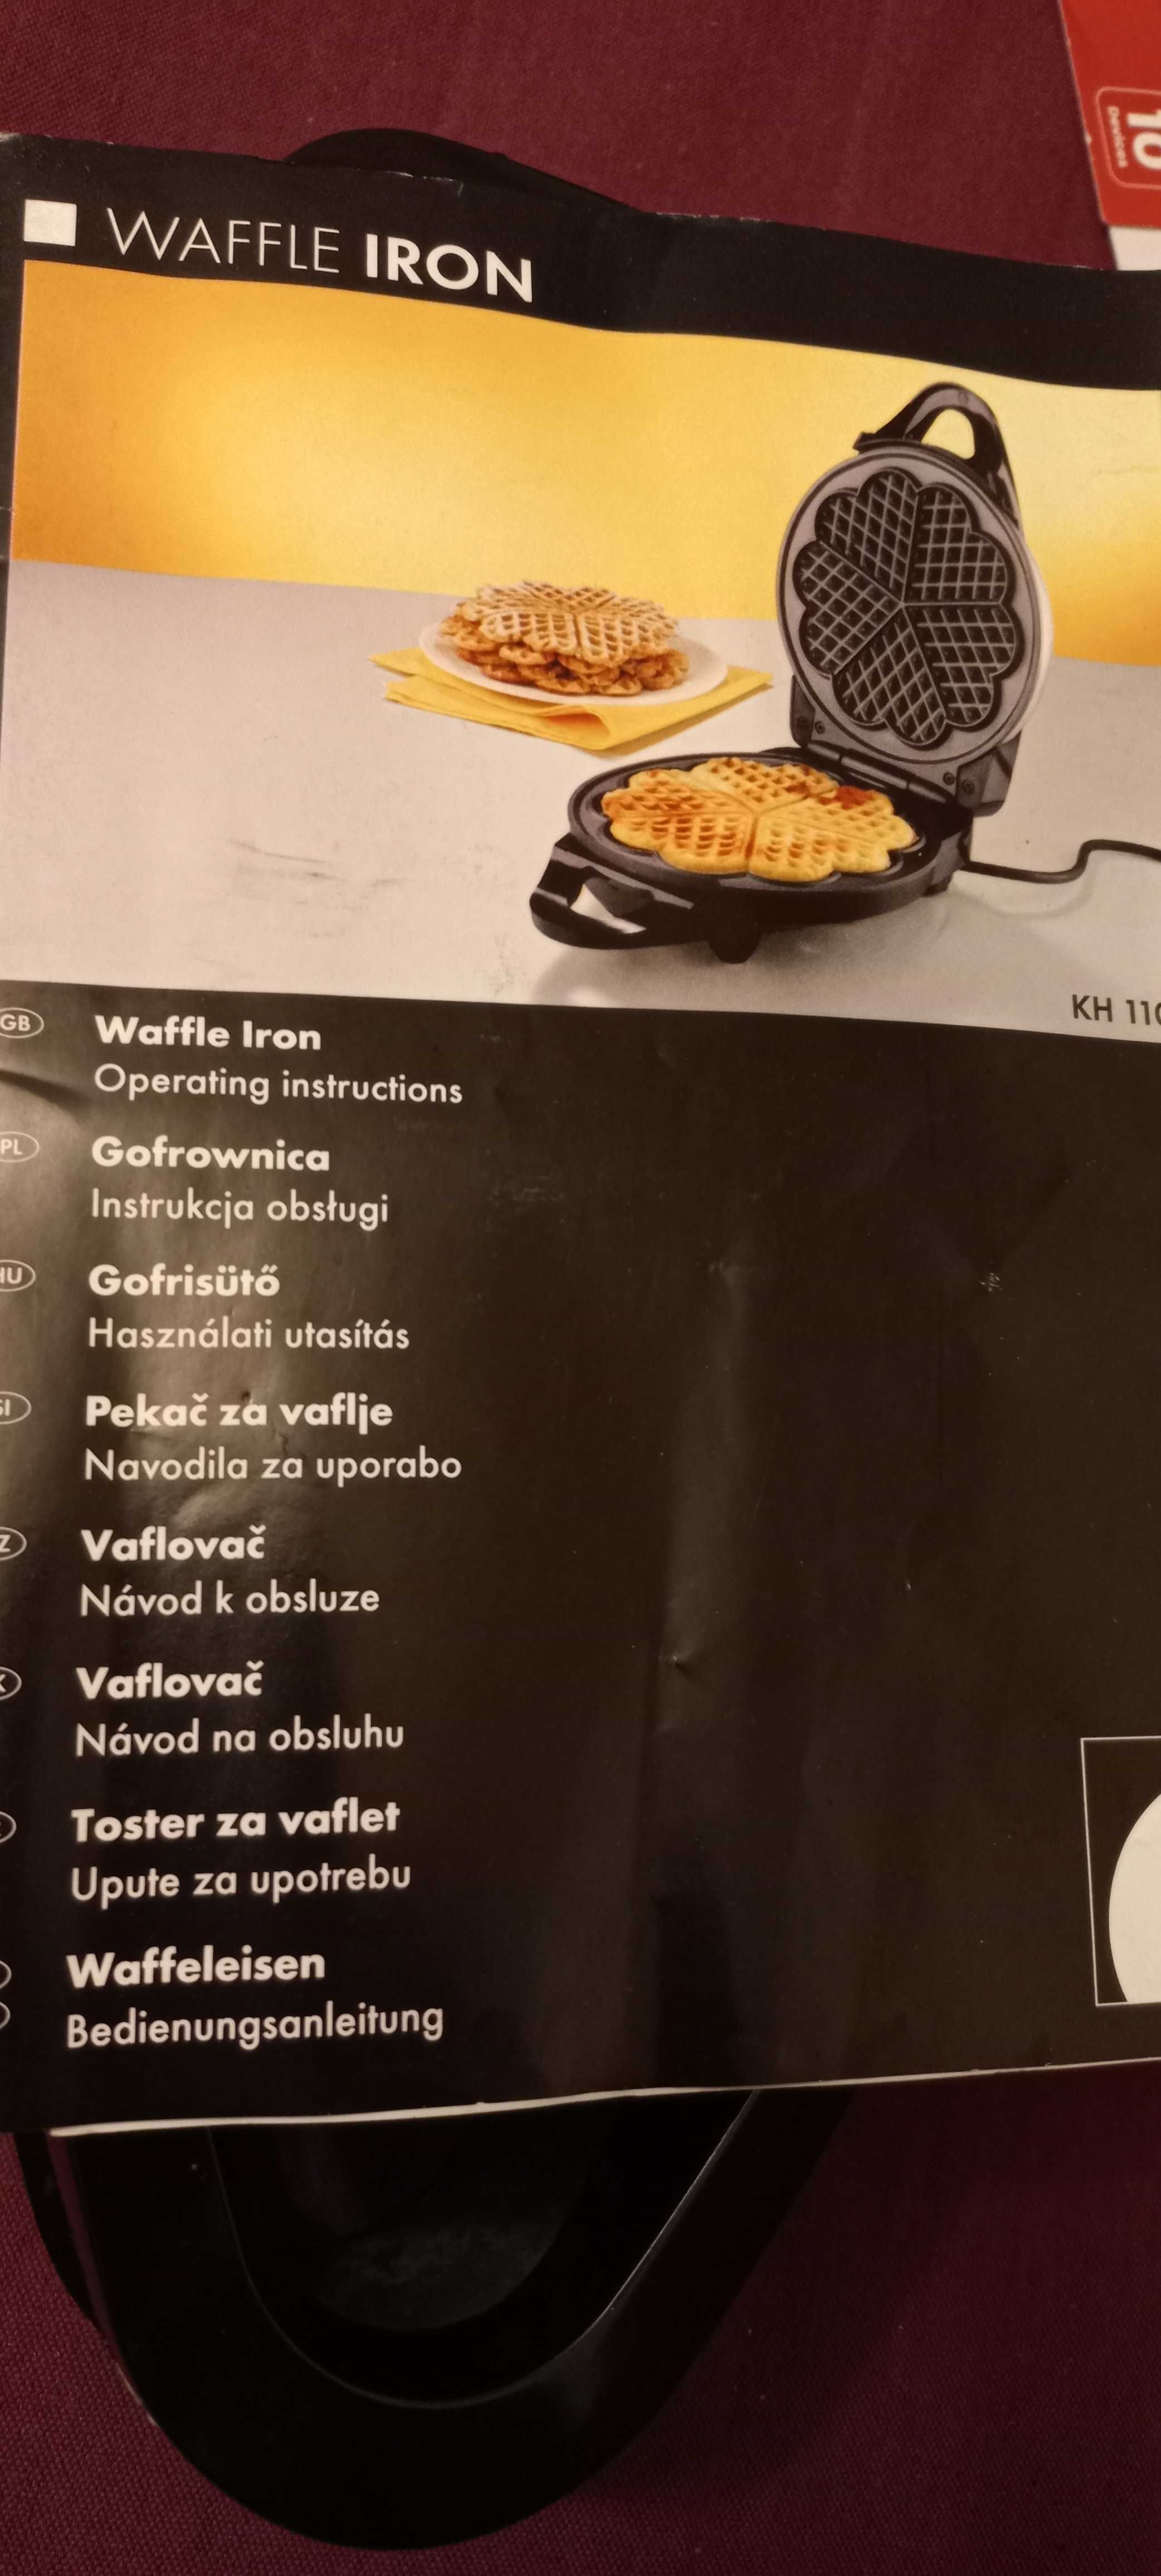 Waflownica - Urządzenie do pieczenia wafli w warunkach domowych